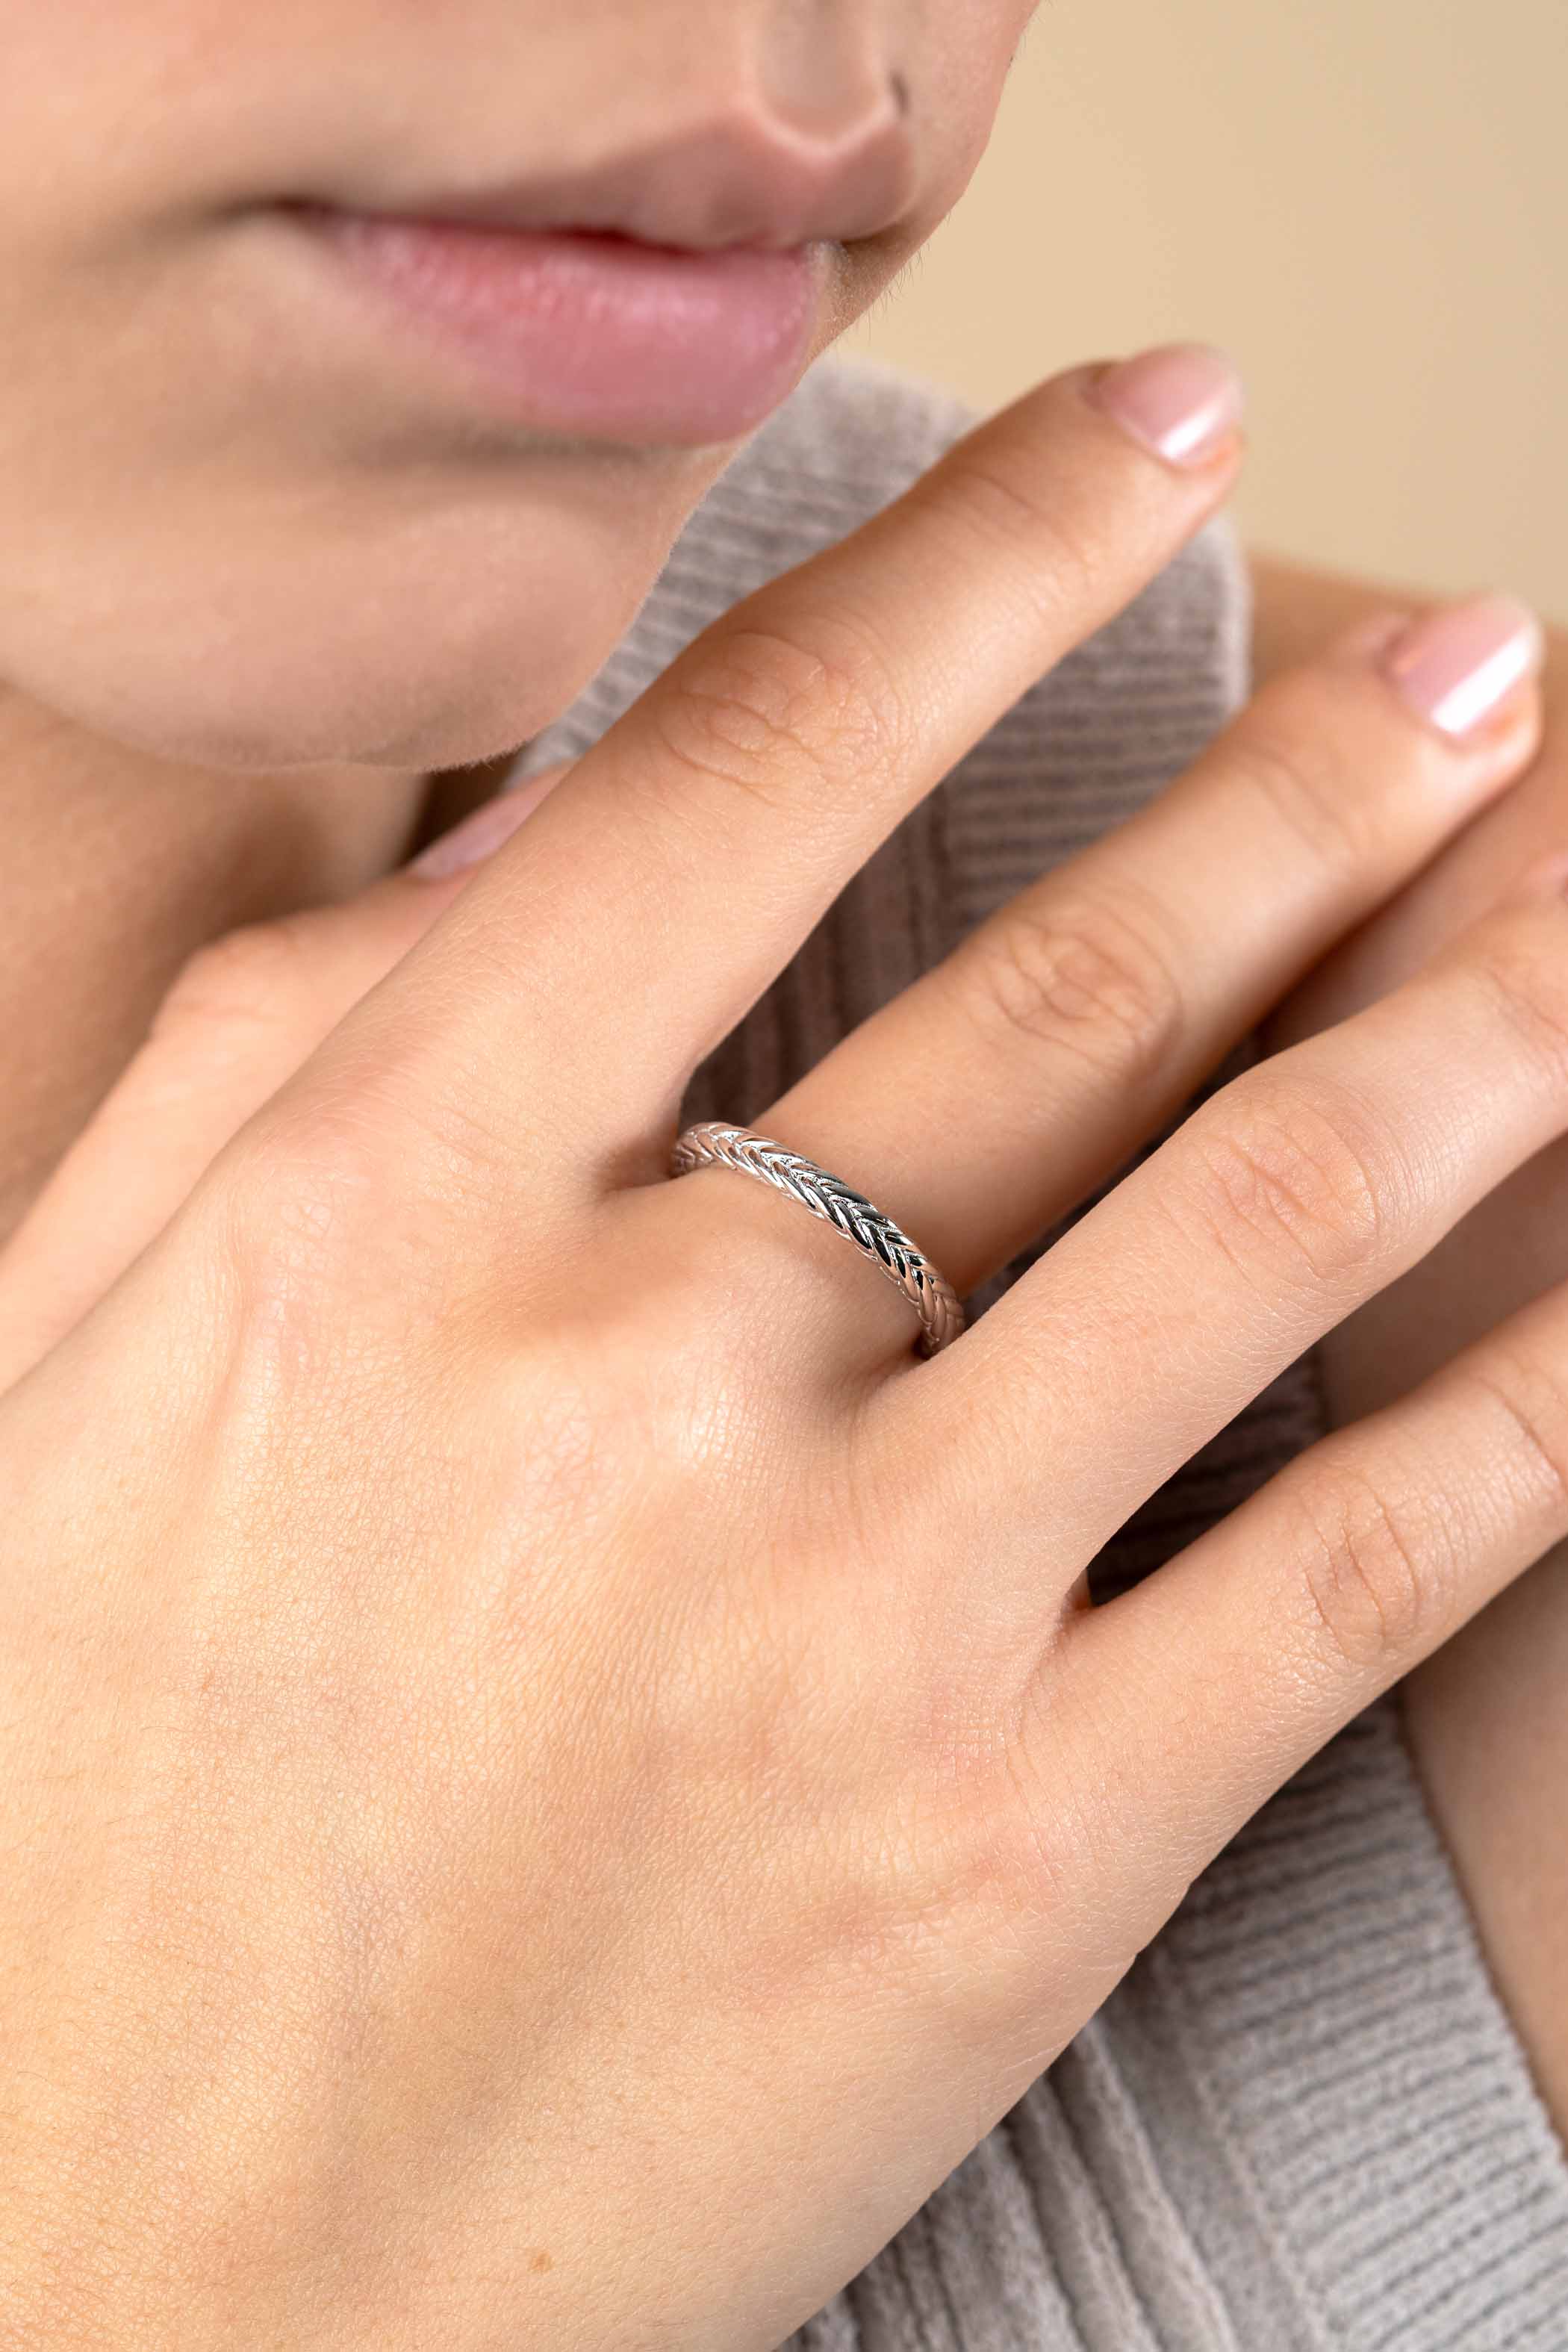 ZINZI zilveren ring met sierlijk gevlochten touweffect 2,6mm breed ZIR2553